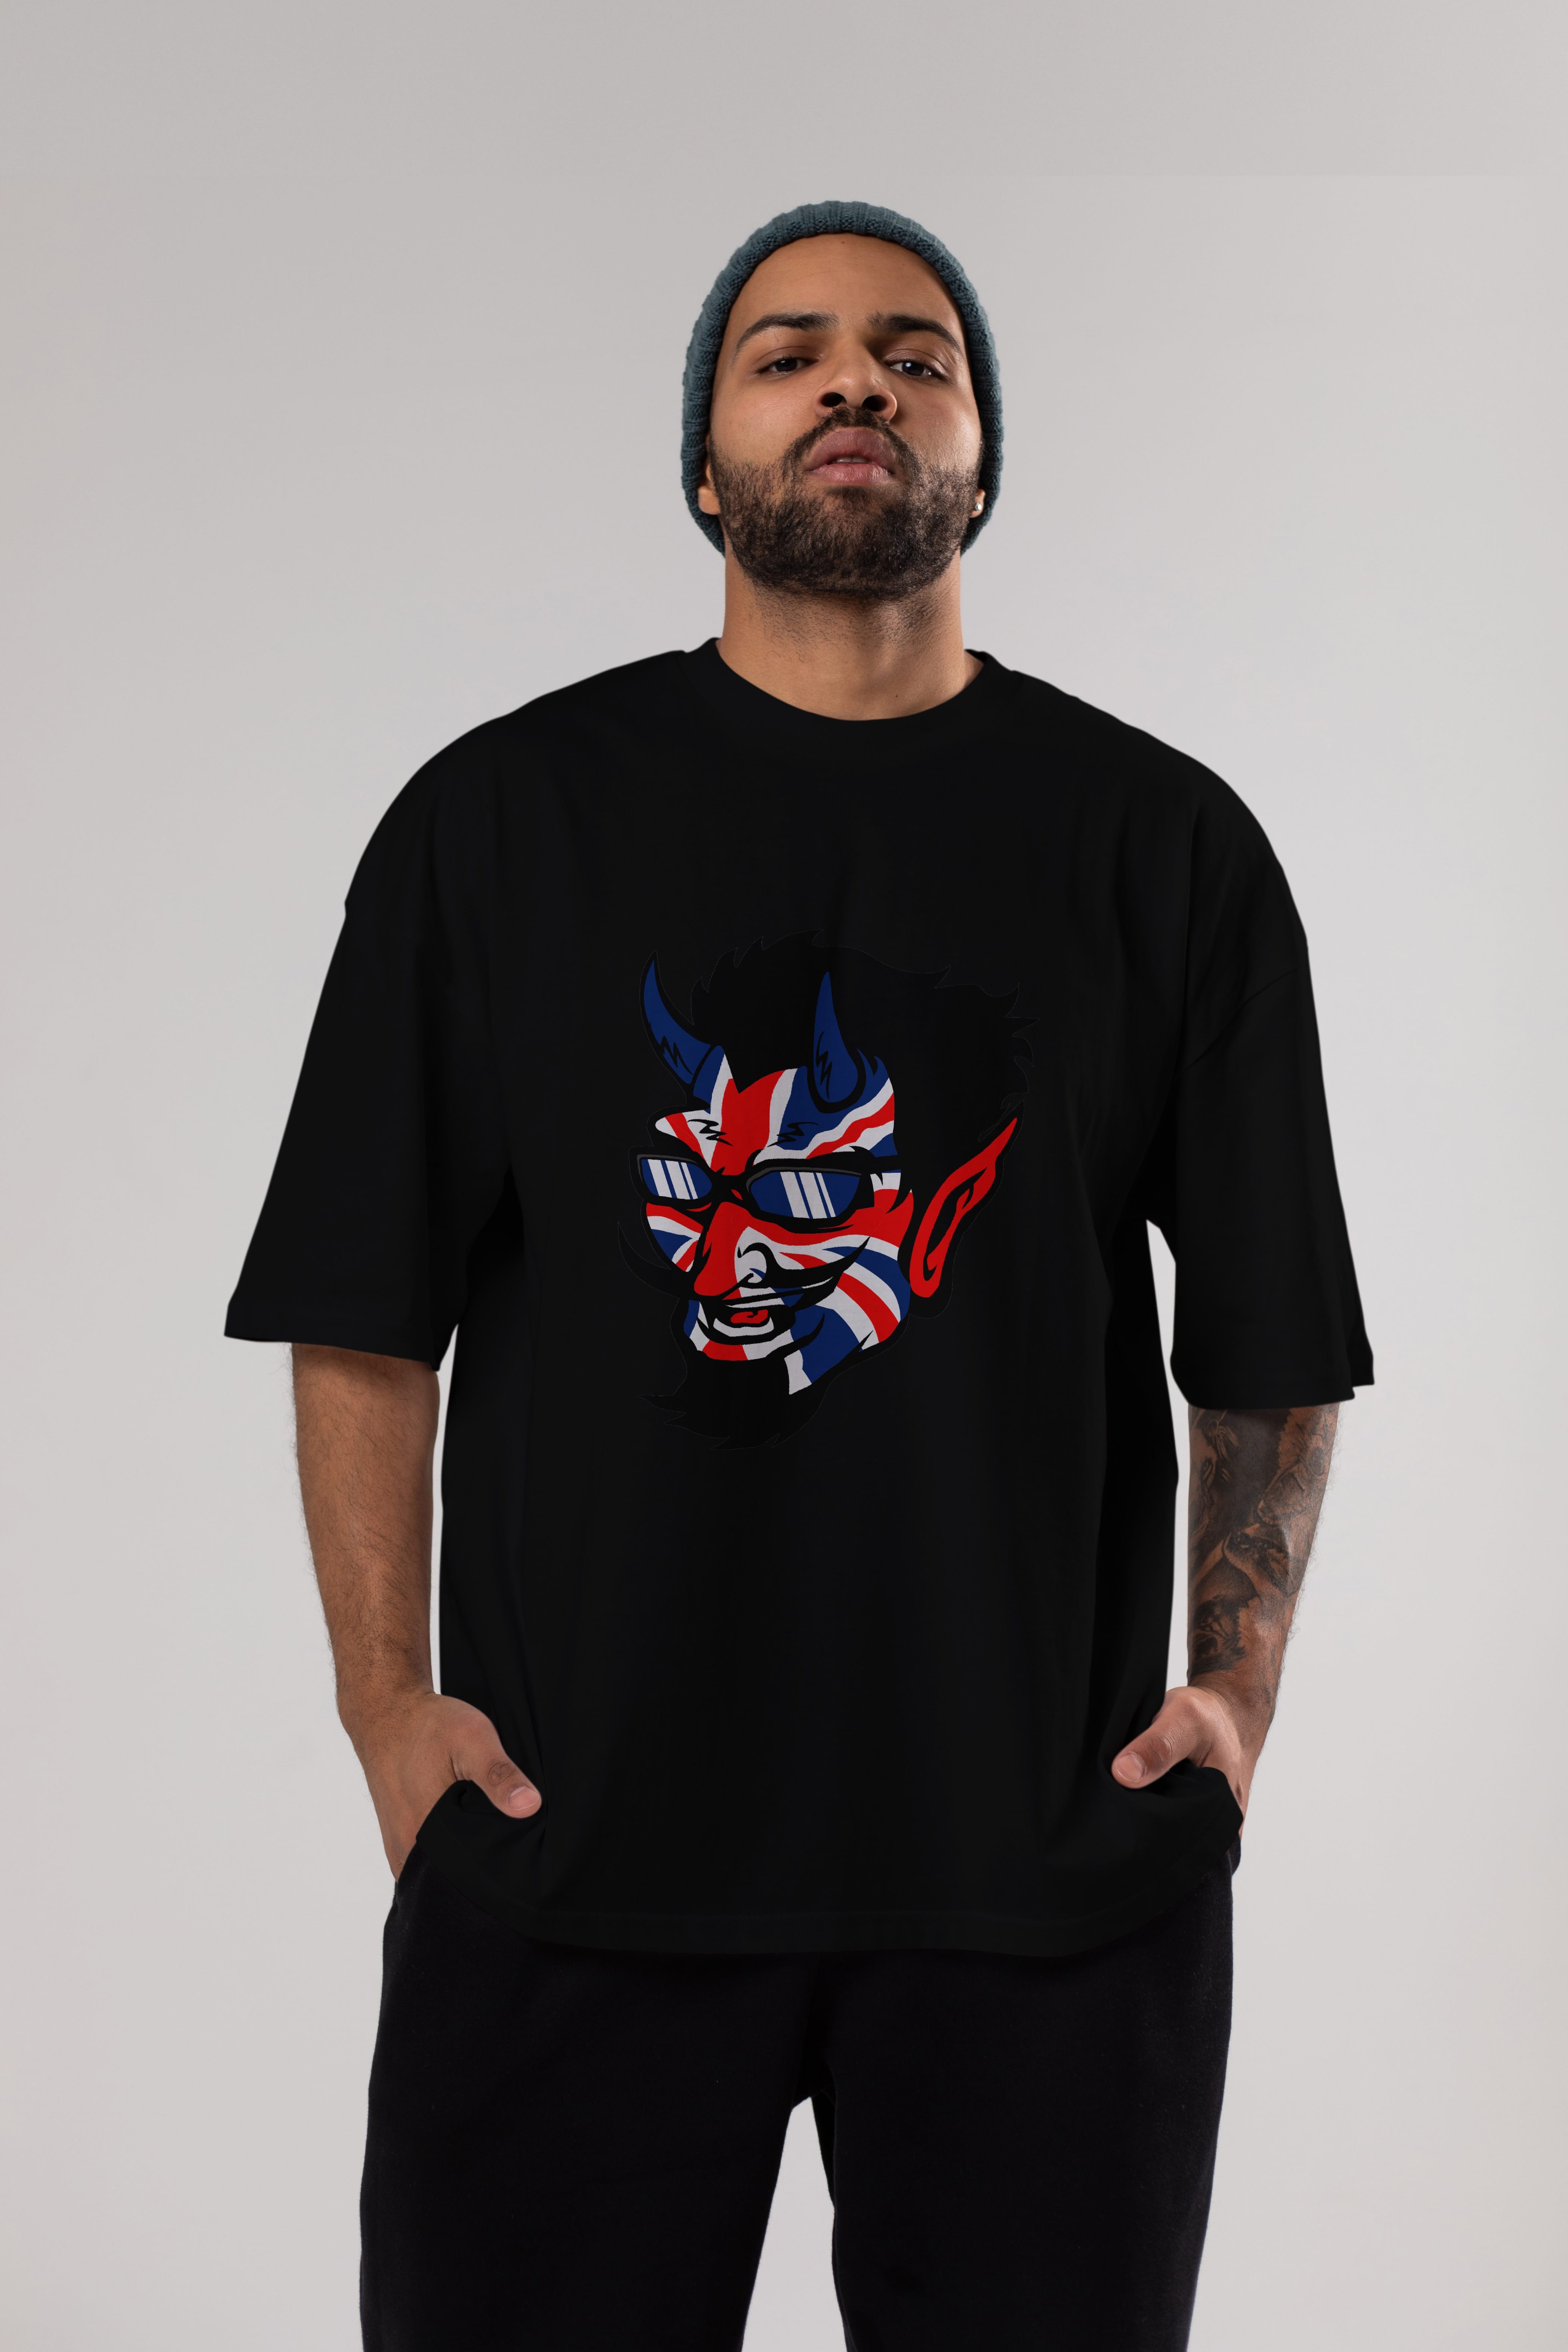 UK Devil Ön Baskılı Oversize t-shirt Erkek Kadın Unisex %100 Pamuk tişort